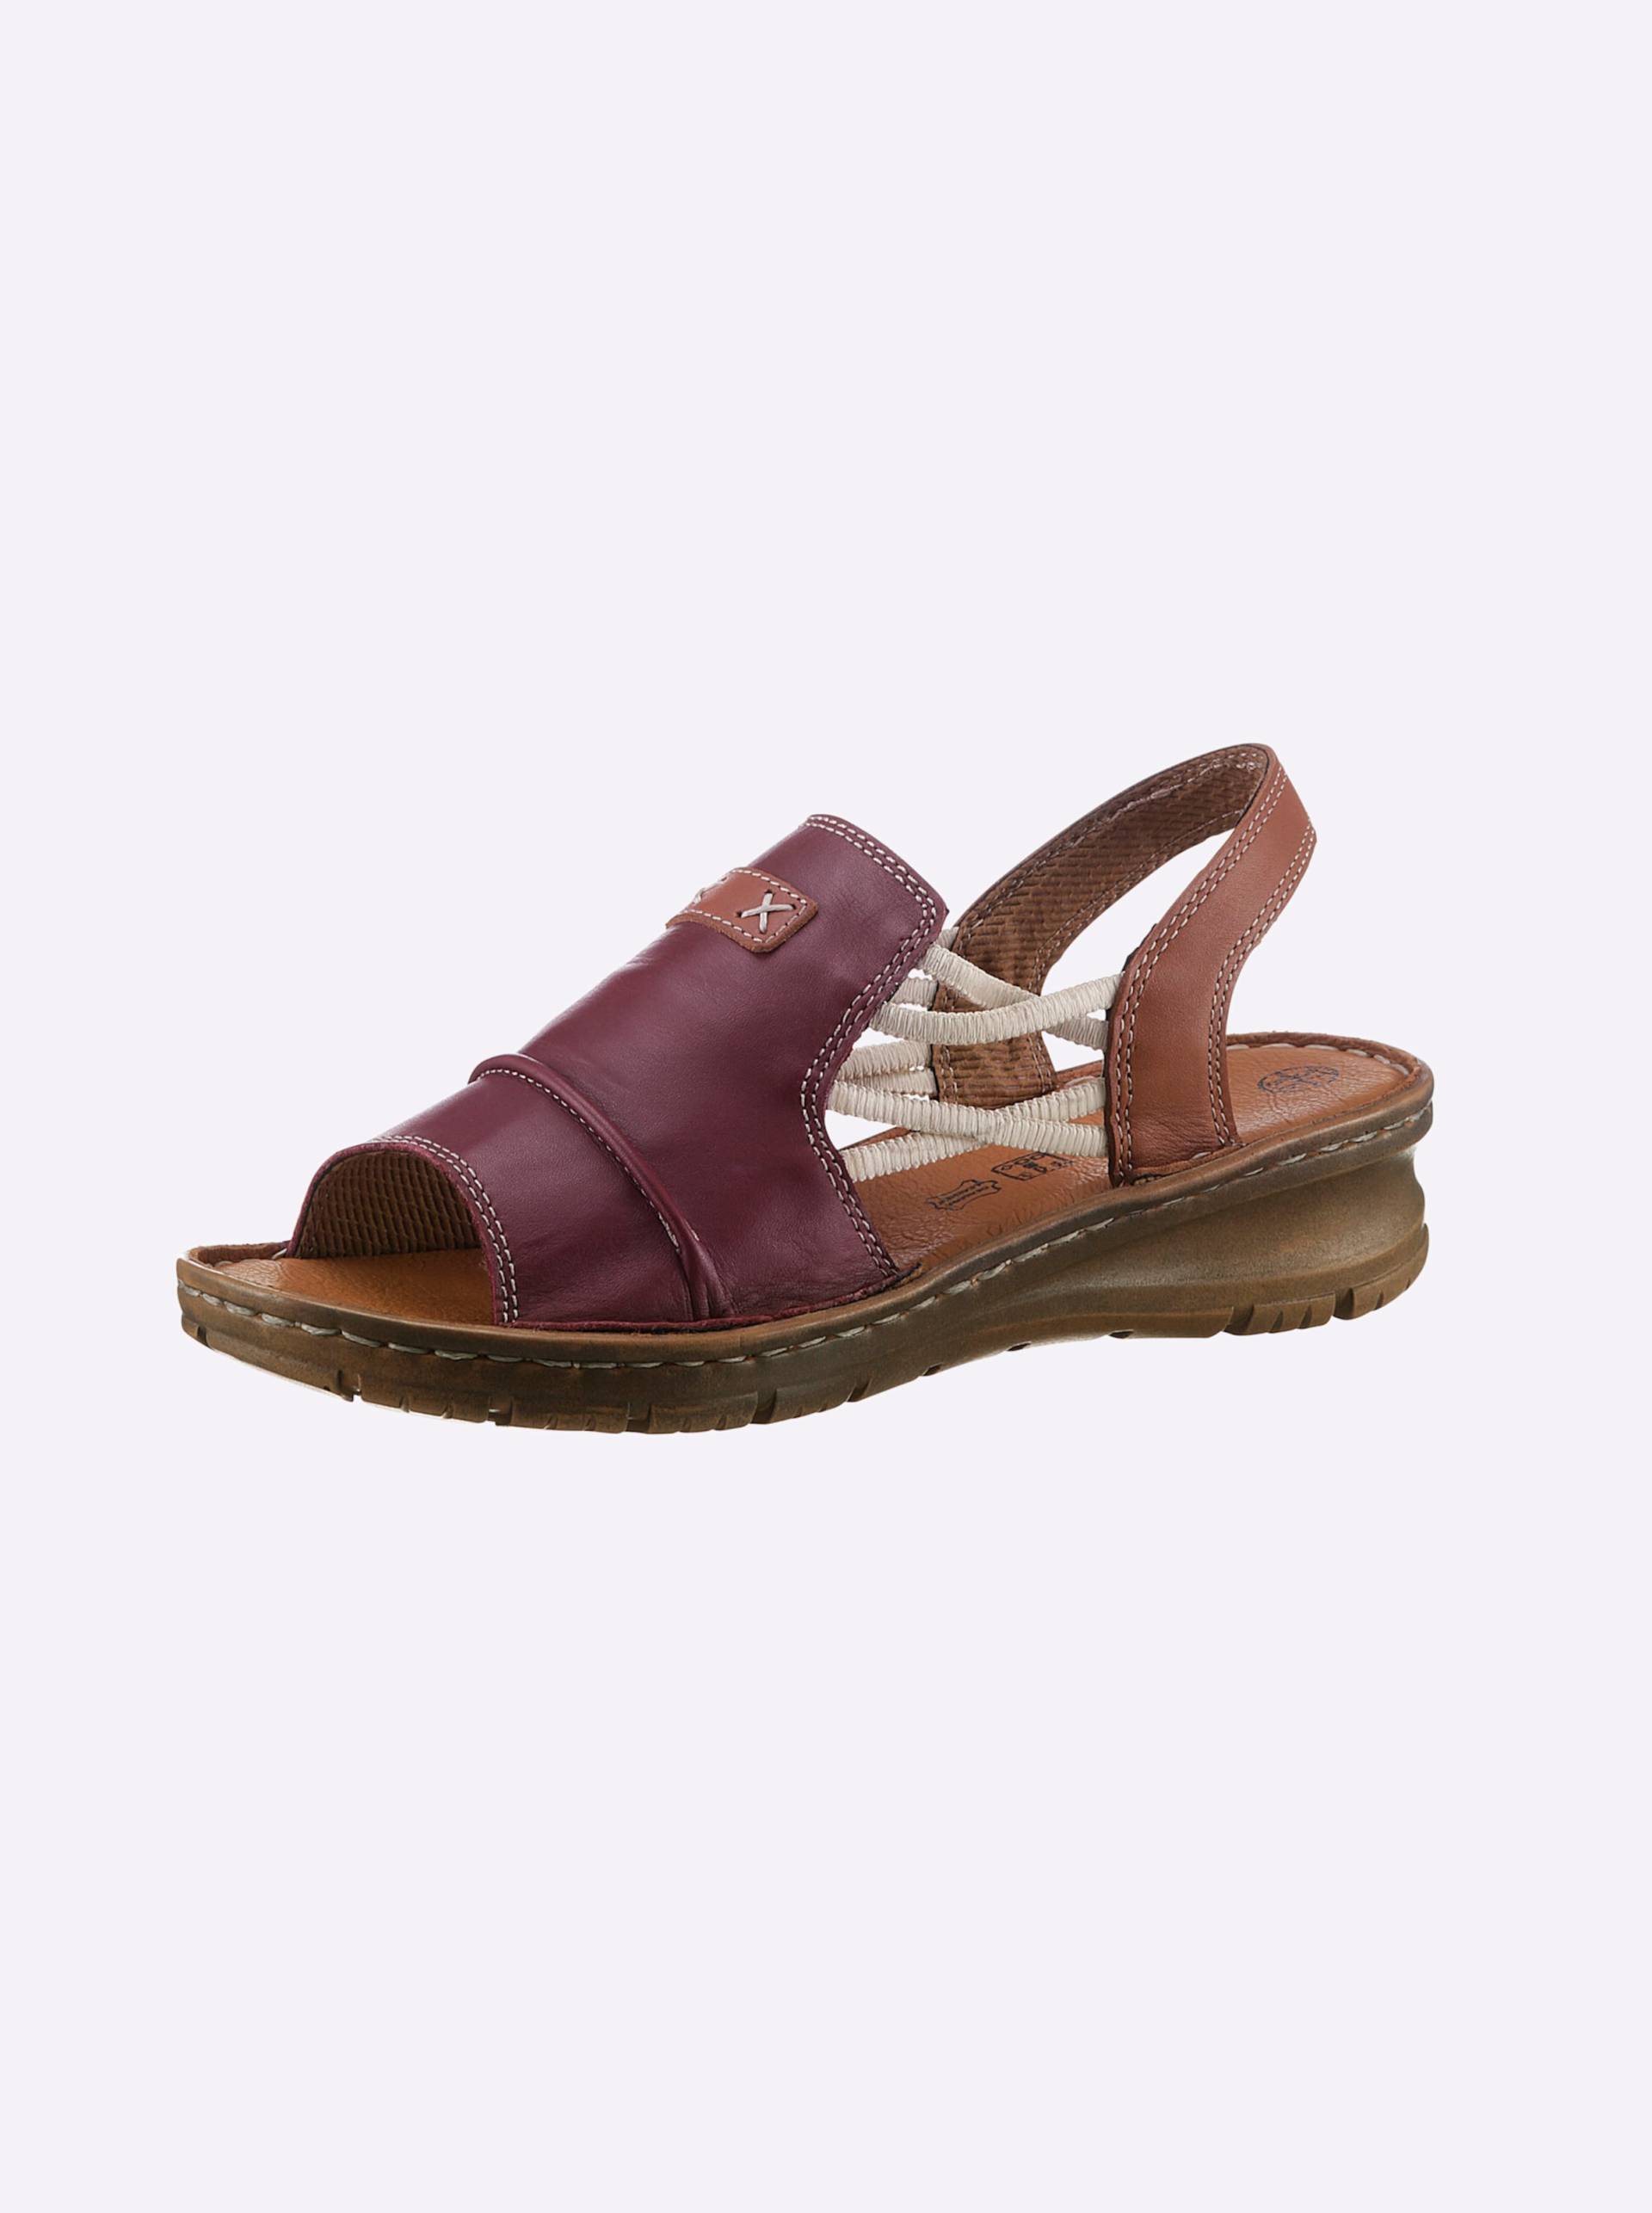 Sandalette in burgund von airsoft modern+